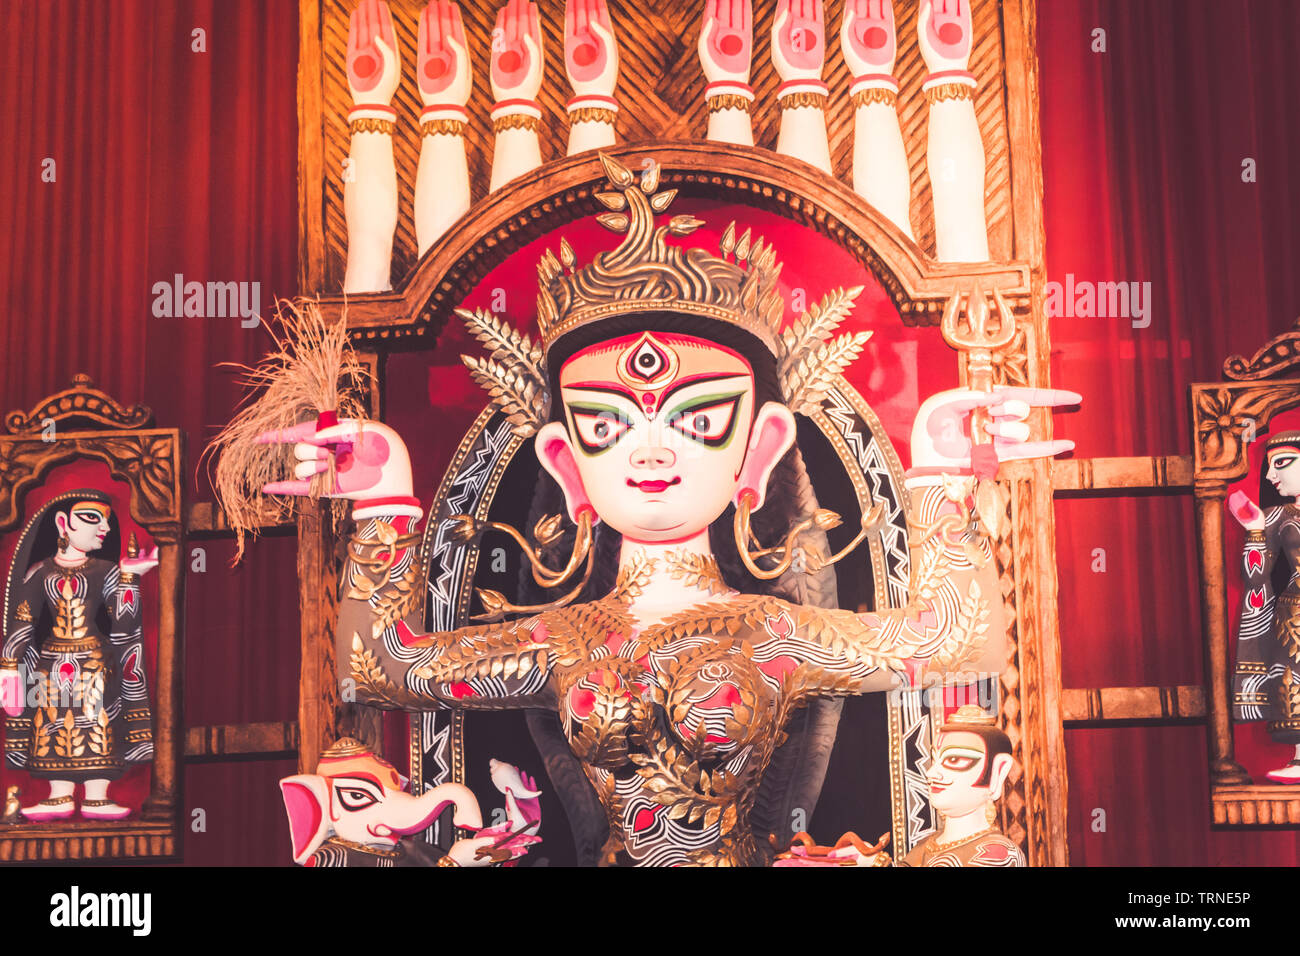 Potrait de déesse Durga idol au sud d'un célèbre temple de Kolkata Durga puja (pandal) sur 'Maha Ashtami' Banque D'Images